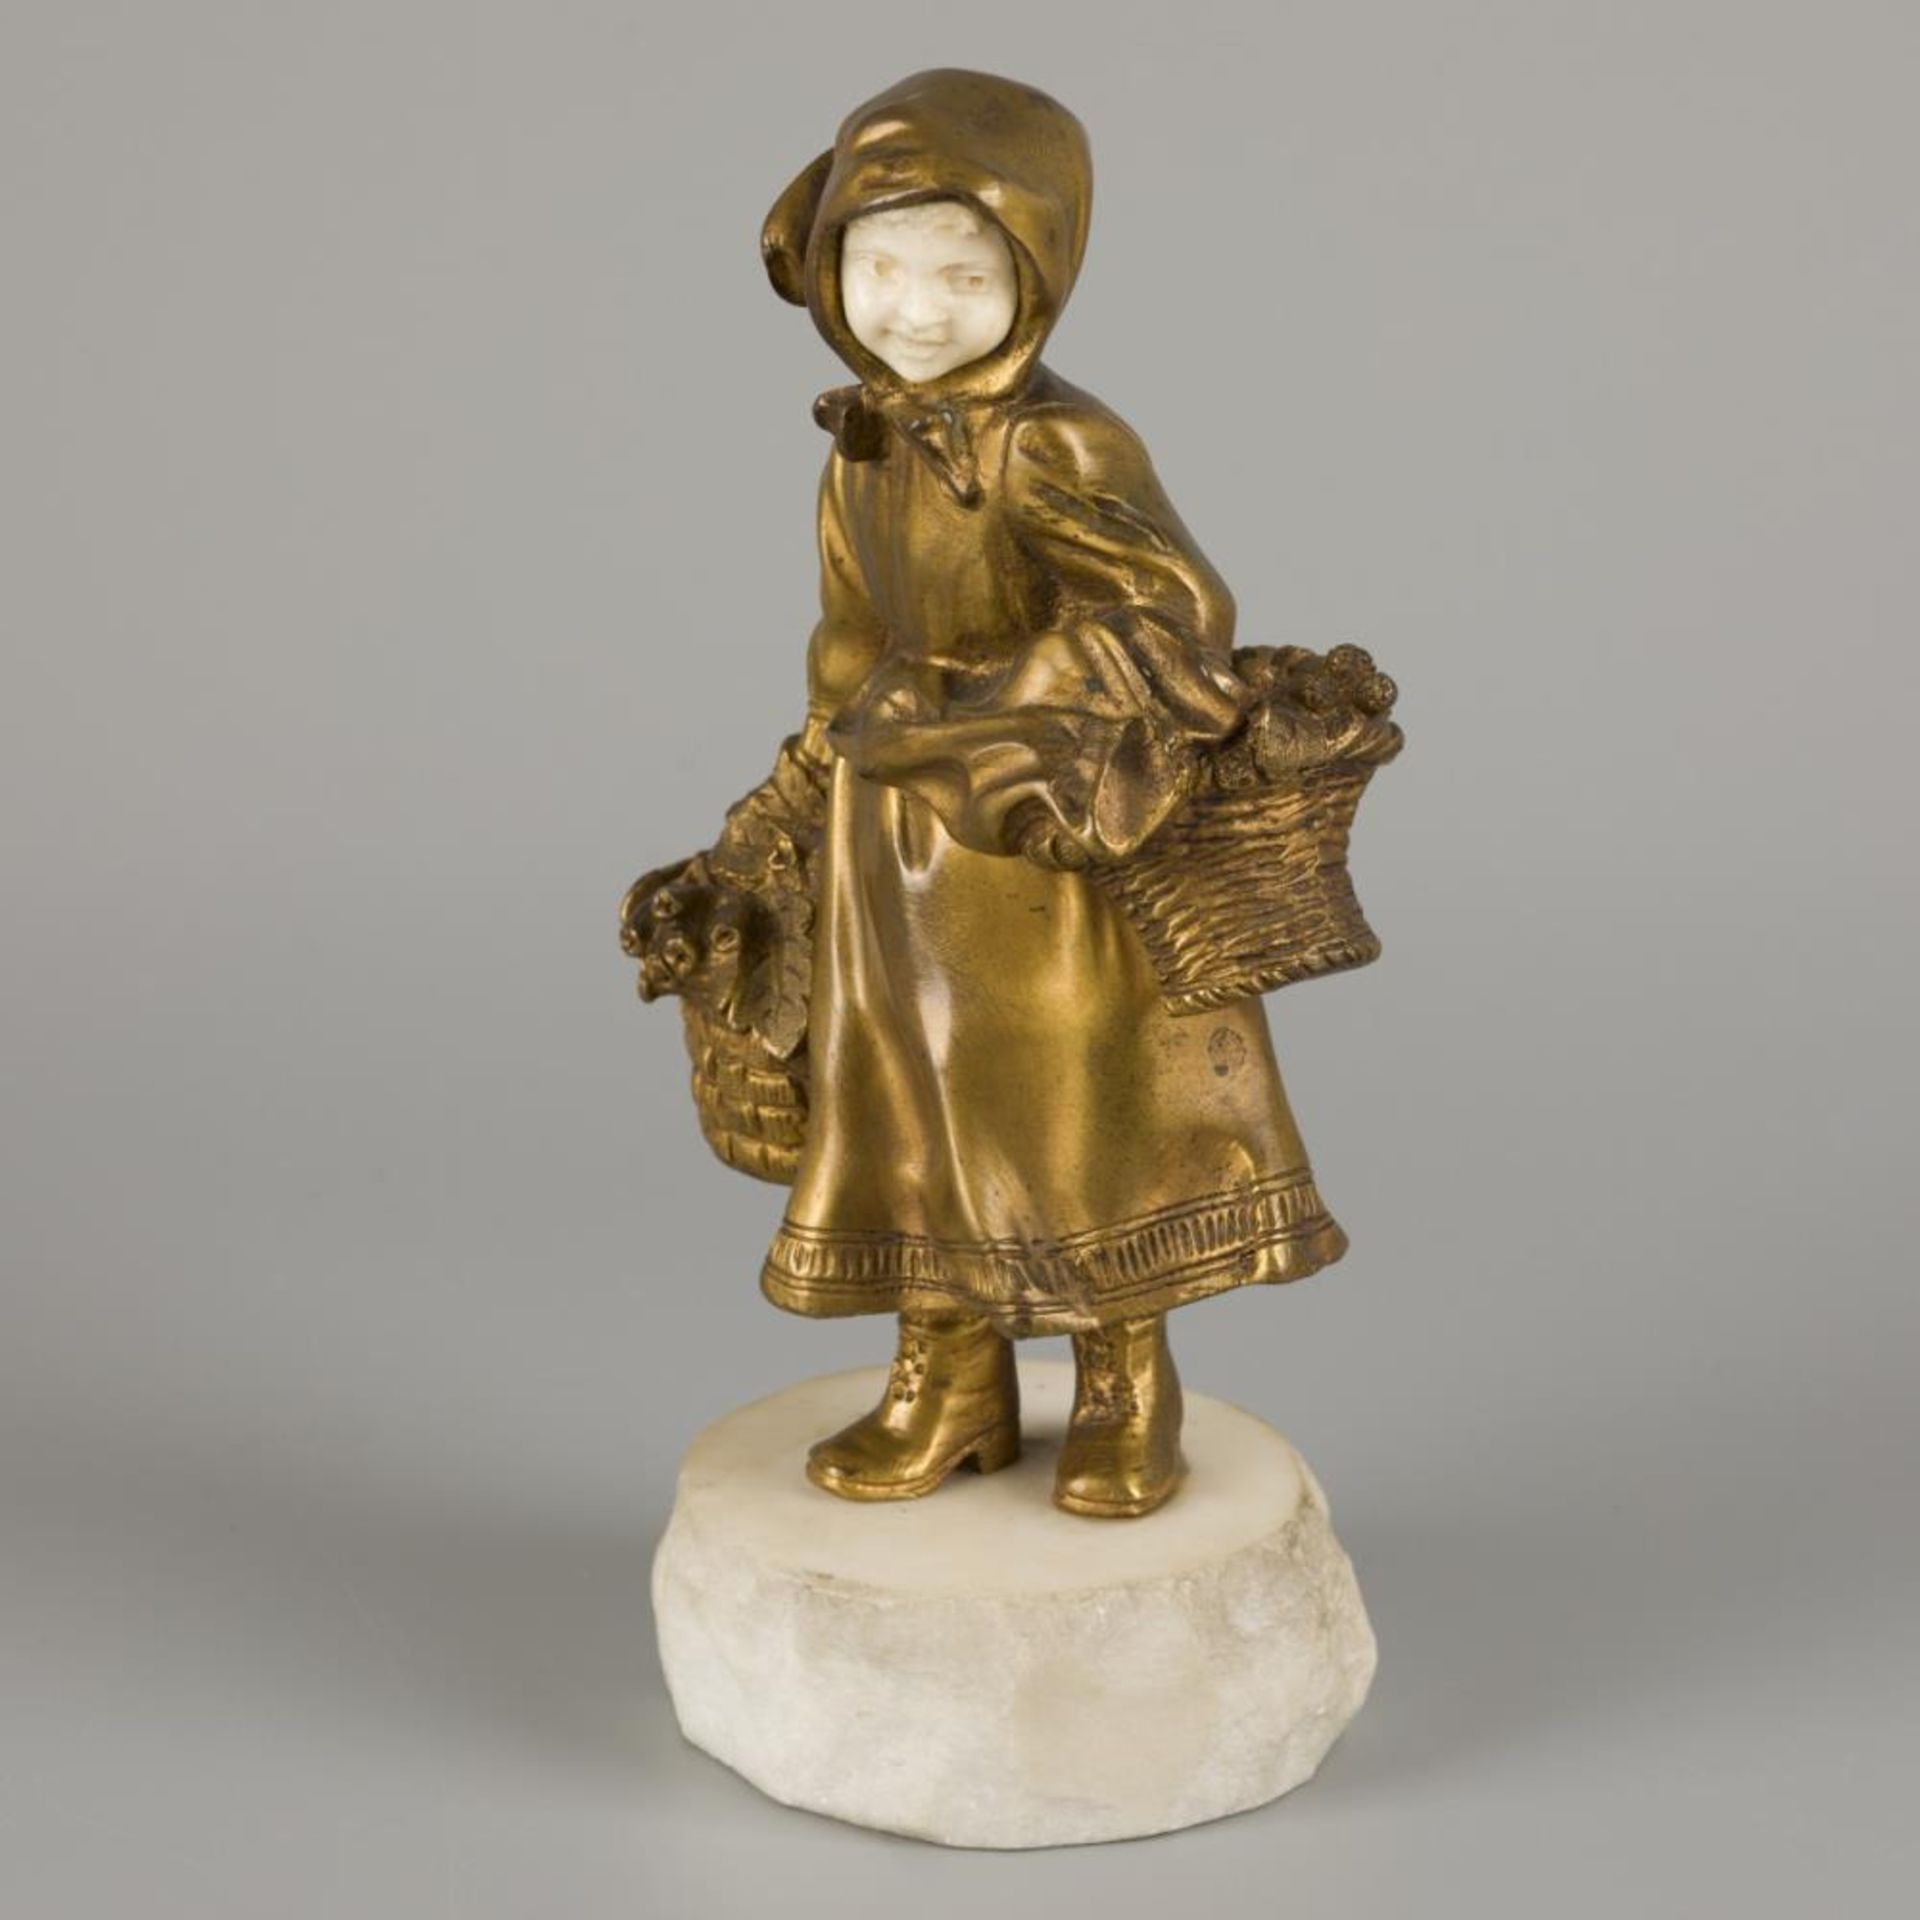 Affortunato Gory (XIX-XX), A bronze 'chryselephantine' sculpture depicting a dancer as a flower girl